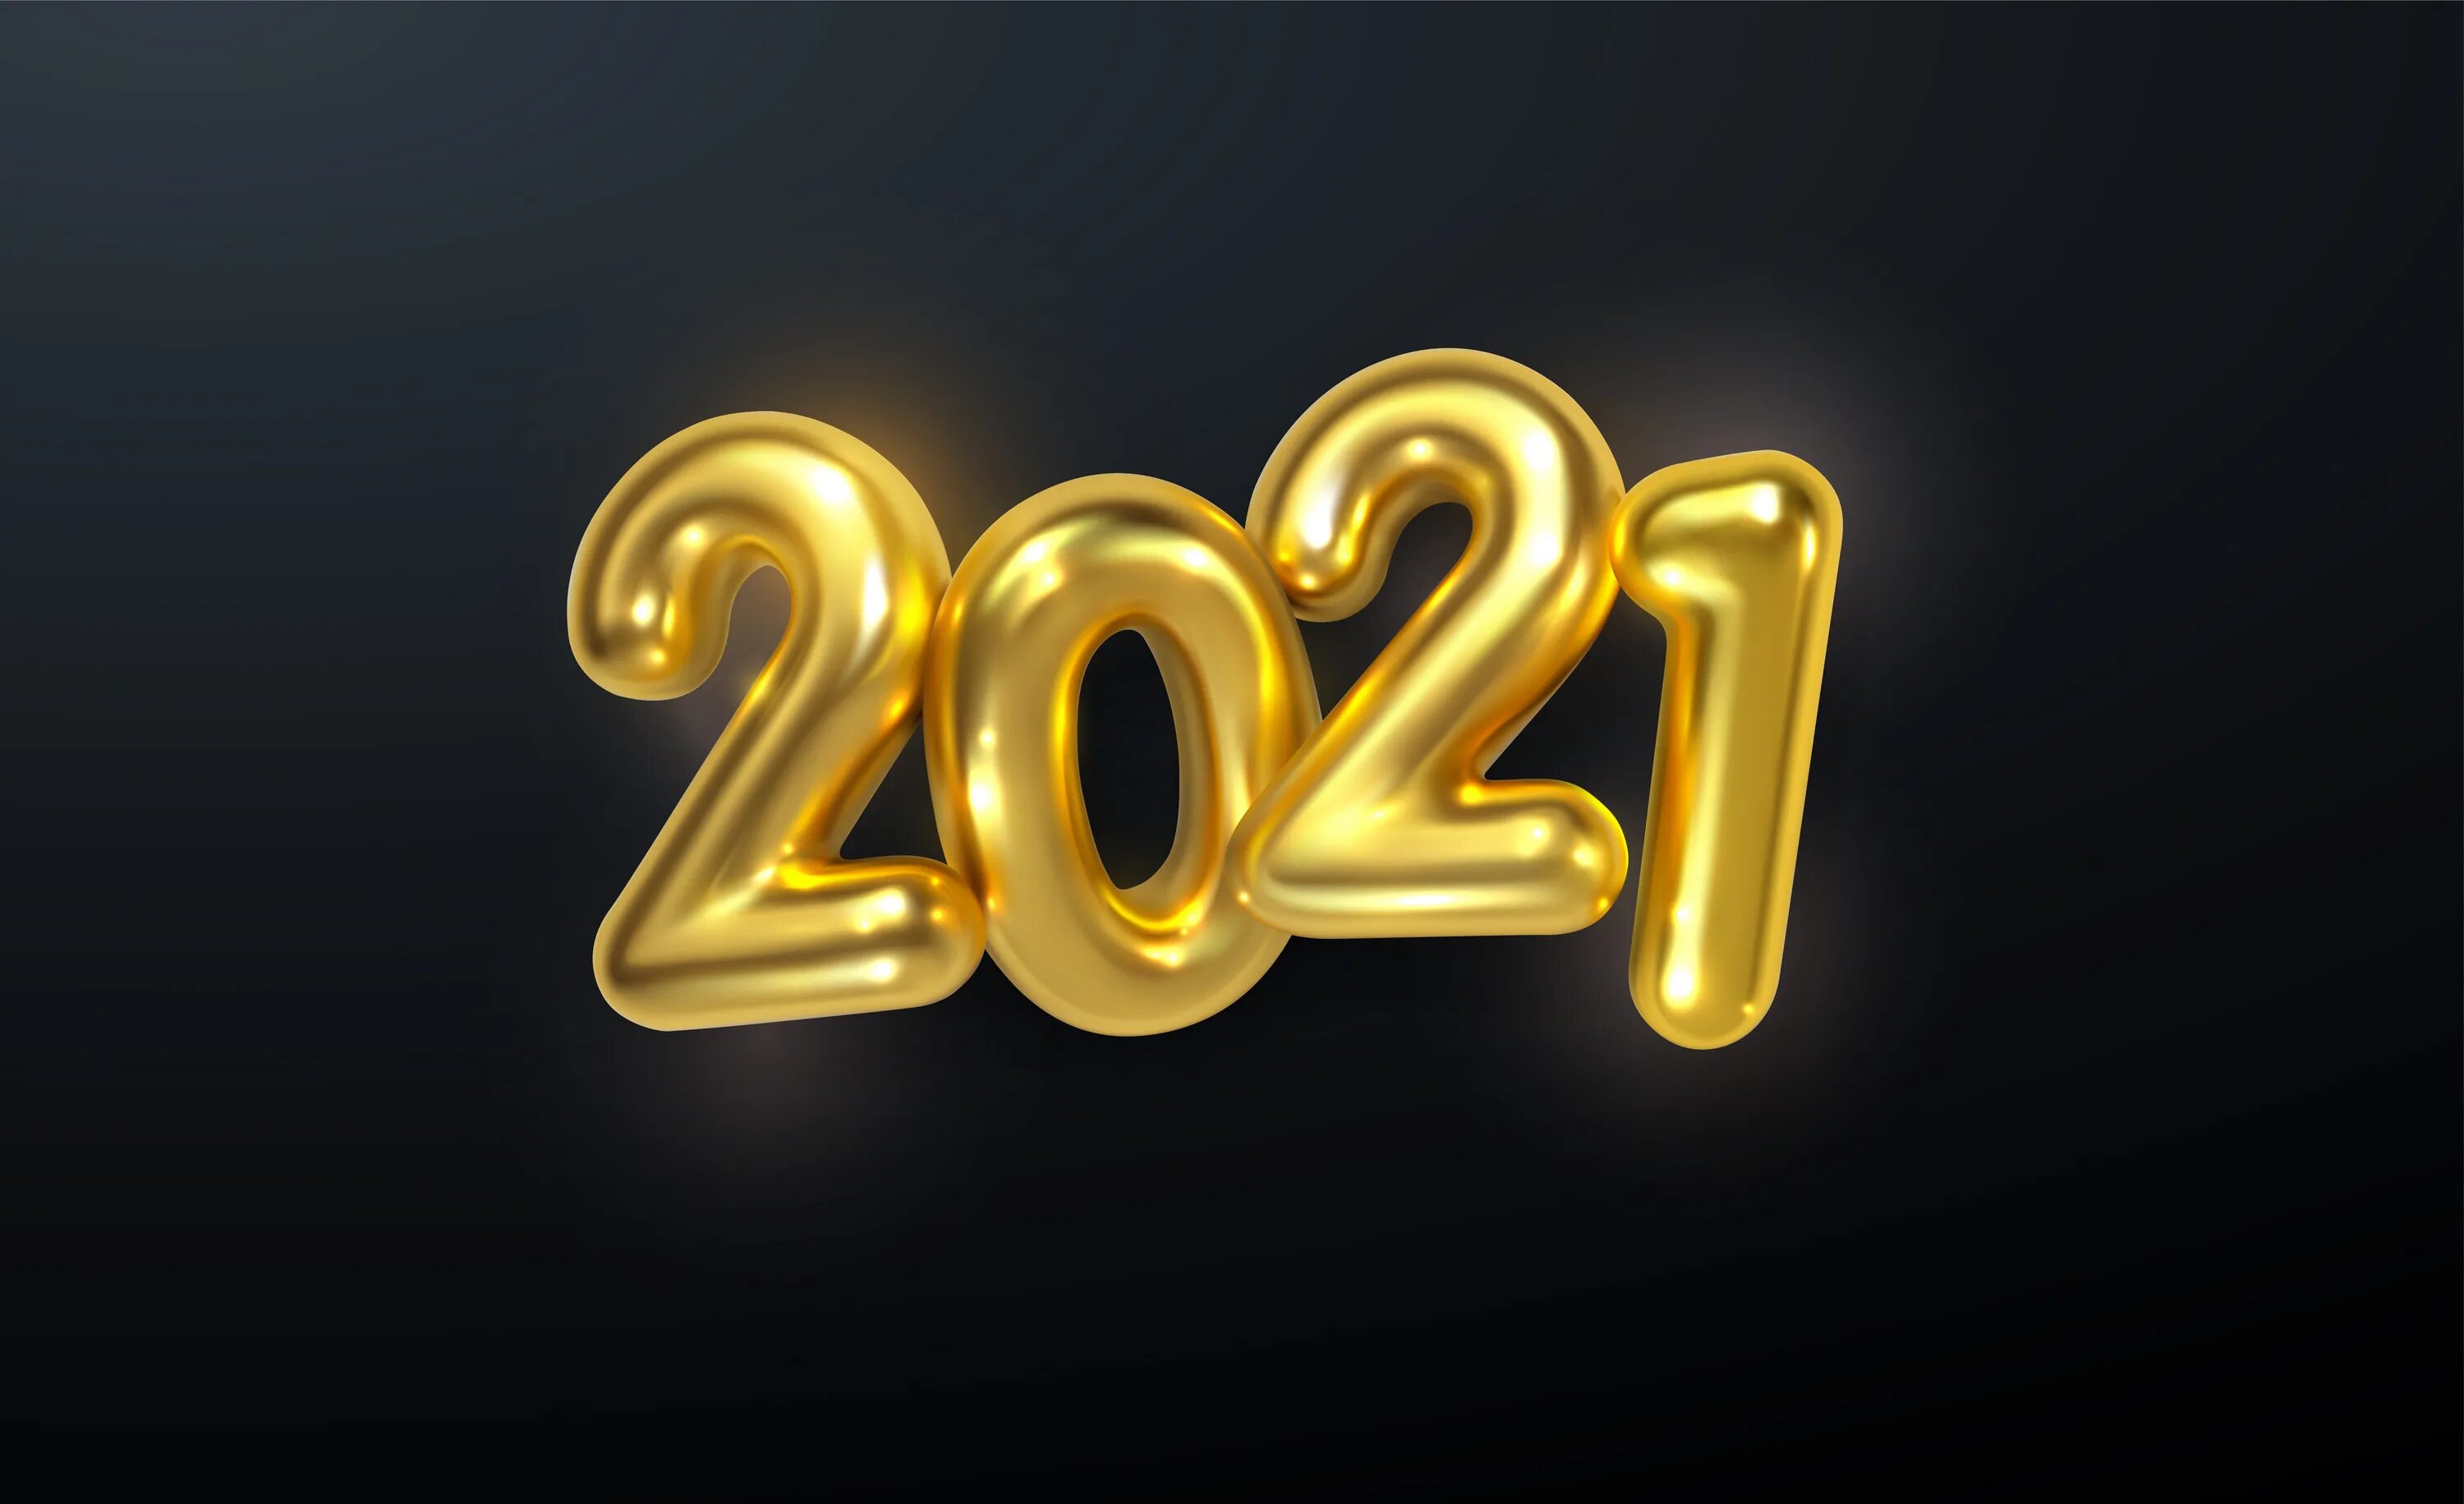 Новый год 2021 г. Золотые цифры 2021. 2021 Год. 2021 Годэ. Картинка 2021.